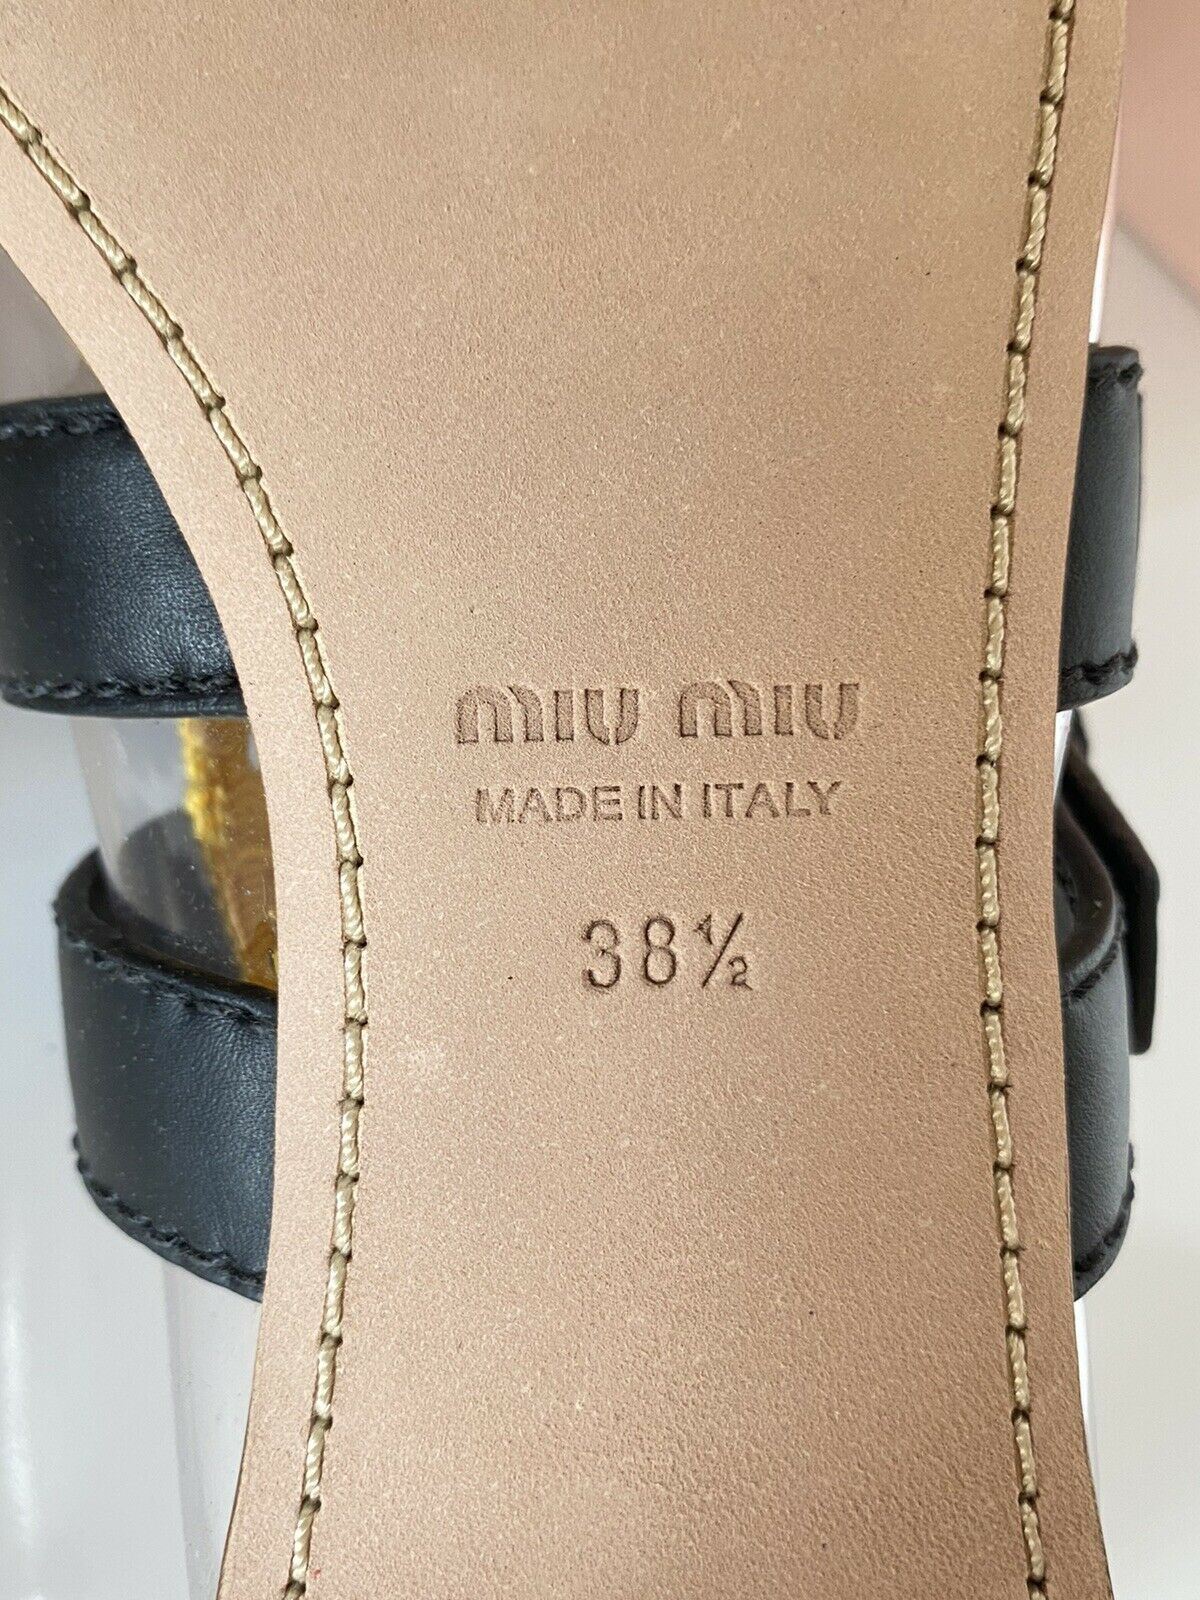 NIB MIU MIU Женские сандалии с прозрачными и желтыми двойными ремешками 8,5 США 5F366C Италия 